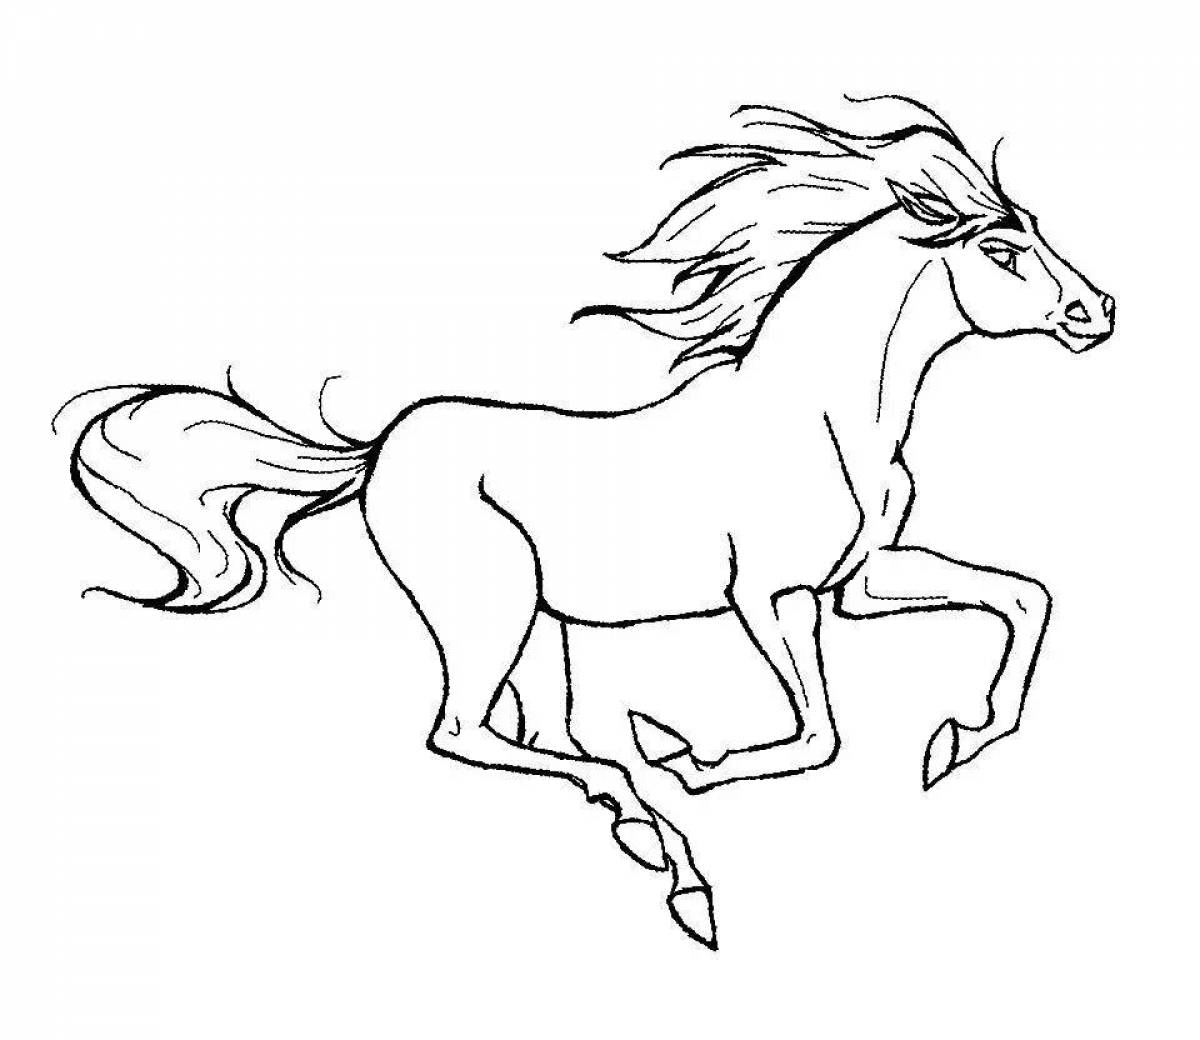 Буйная раскраска рисунок лошади